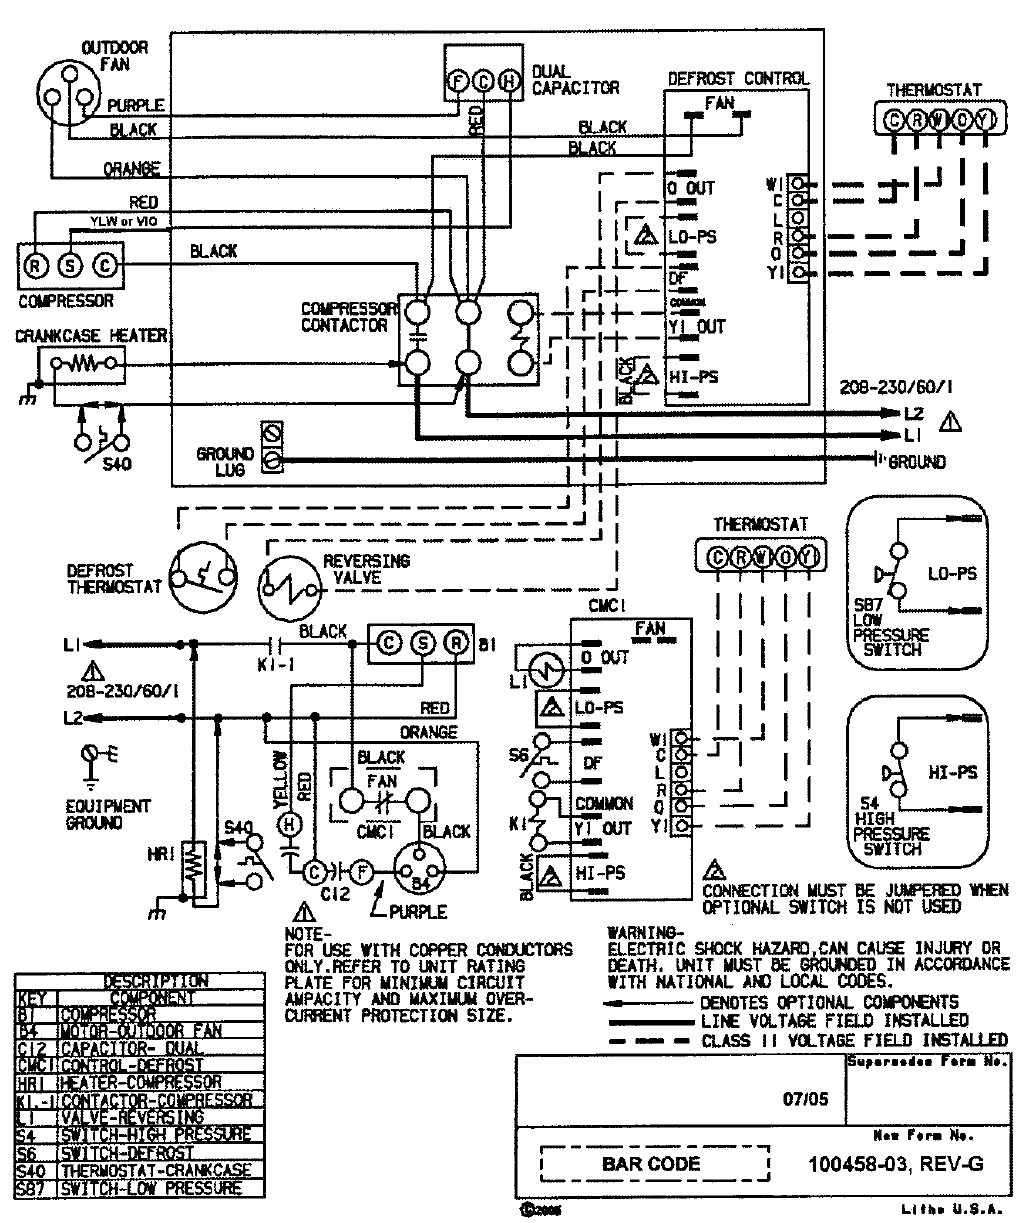 Heat Pump Low Voltage Wiring Diagram / Carrier Heat Pump Low Voltage